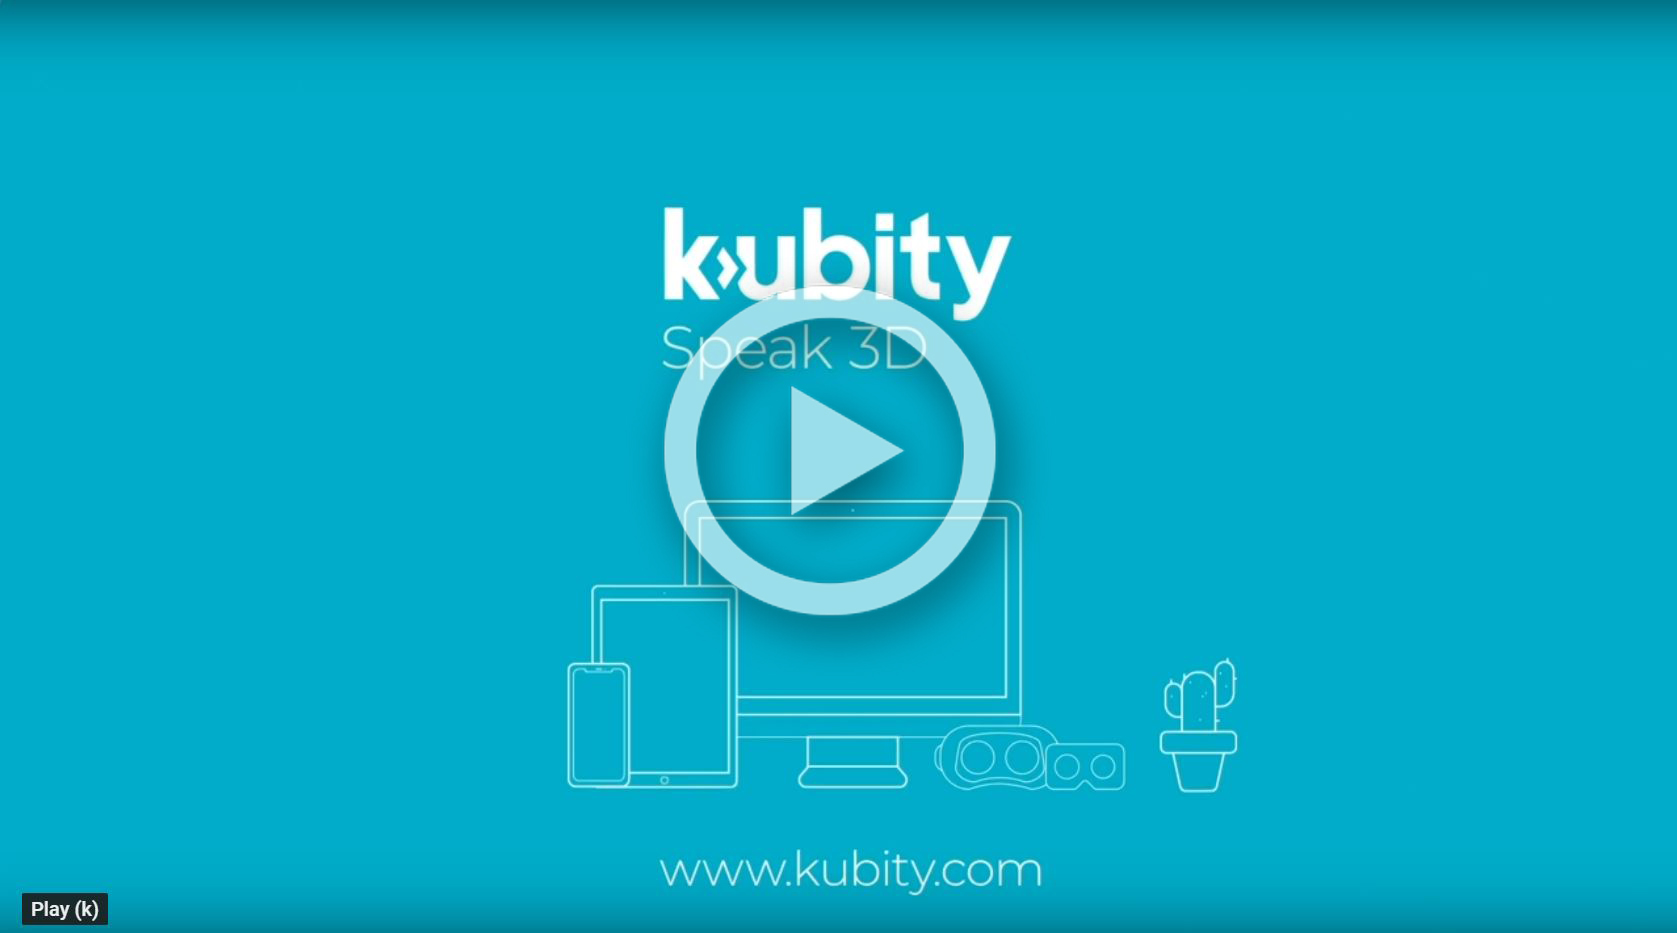 Kubity Explainer Video